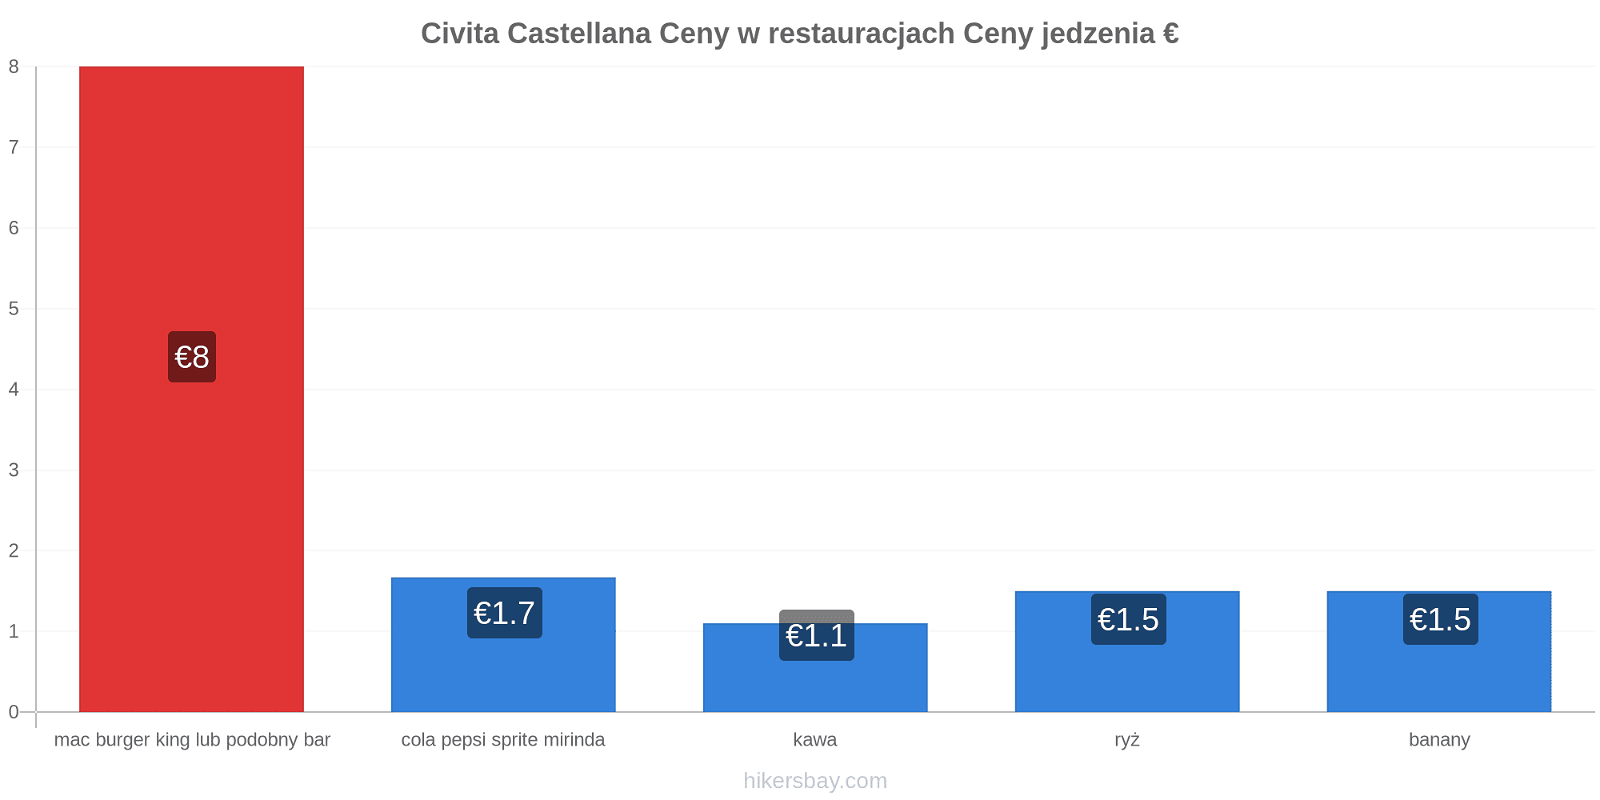 Civita Castellana zmiany cen hikersbay.com